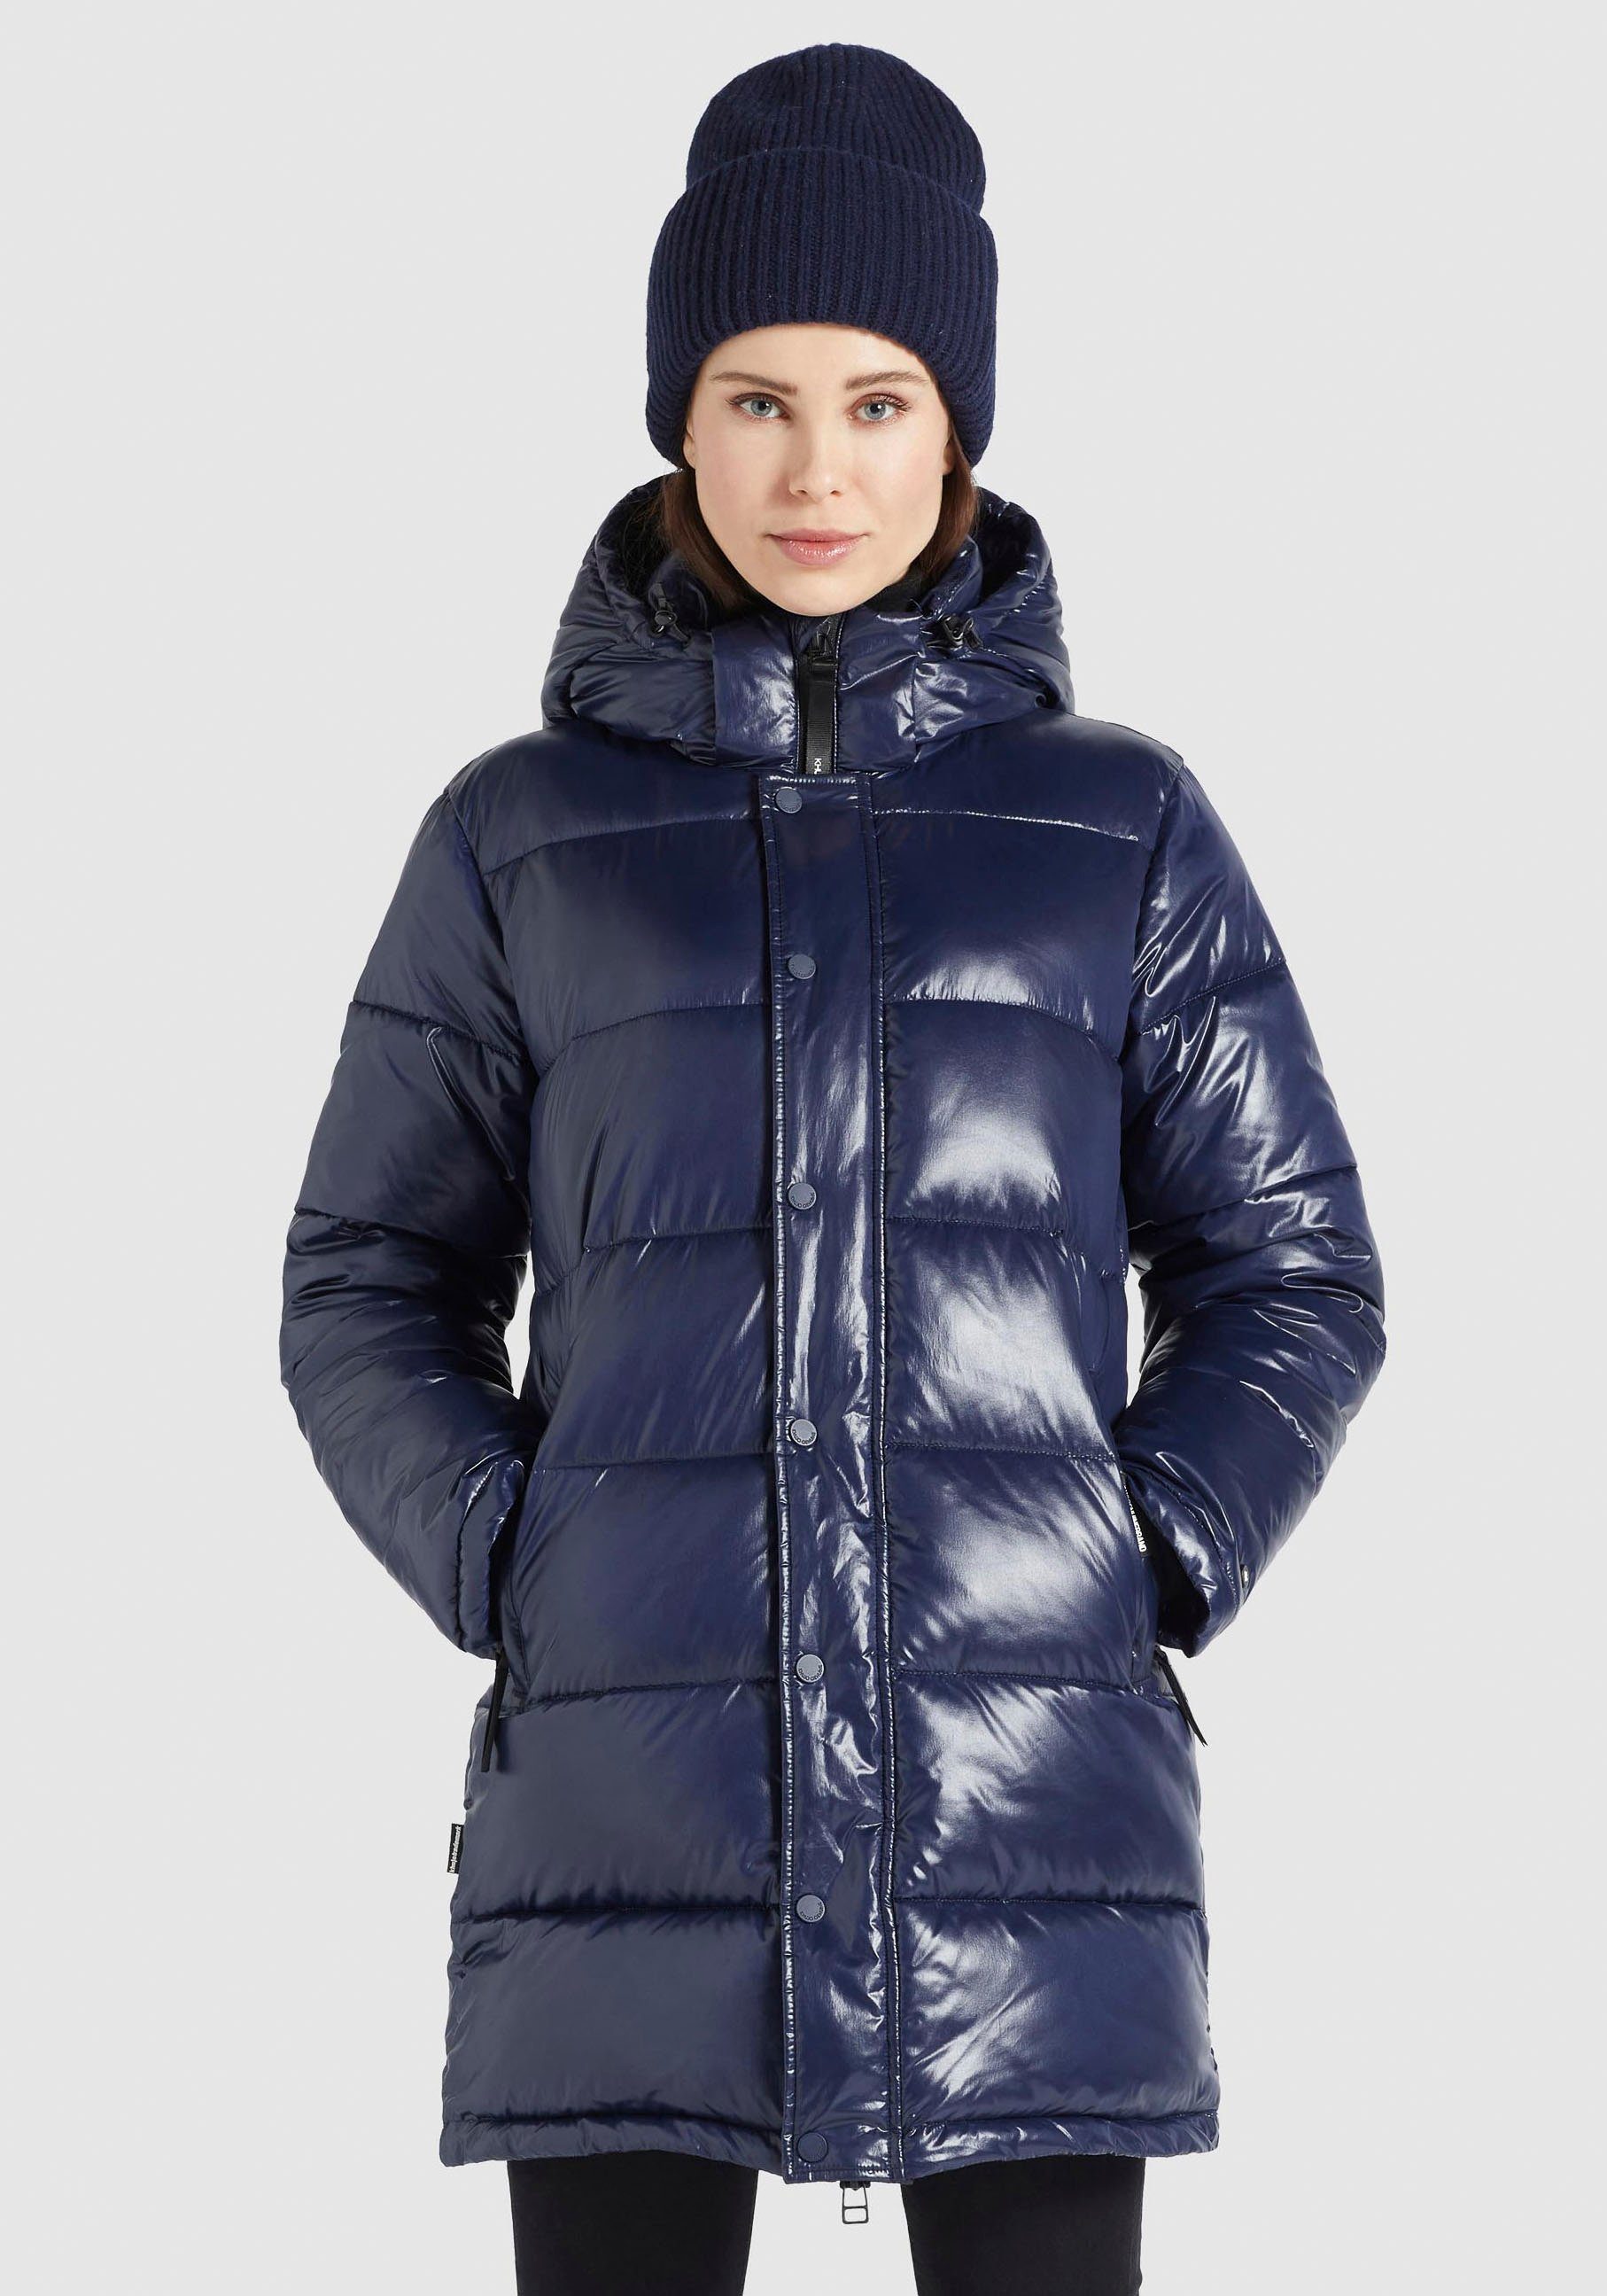 khujo Steppjacke »Wencke Shiny« Damen Winterjacke mit leicht glänzenden  Obermaterial online kaufen | OTTO